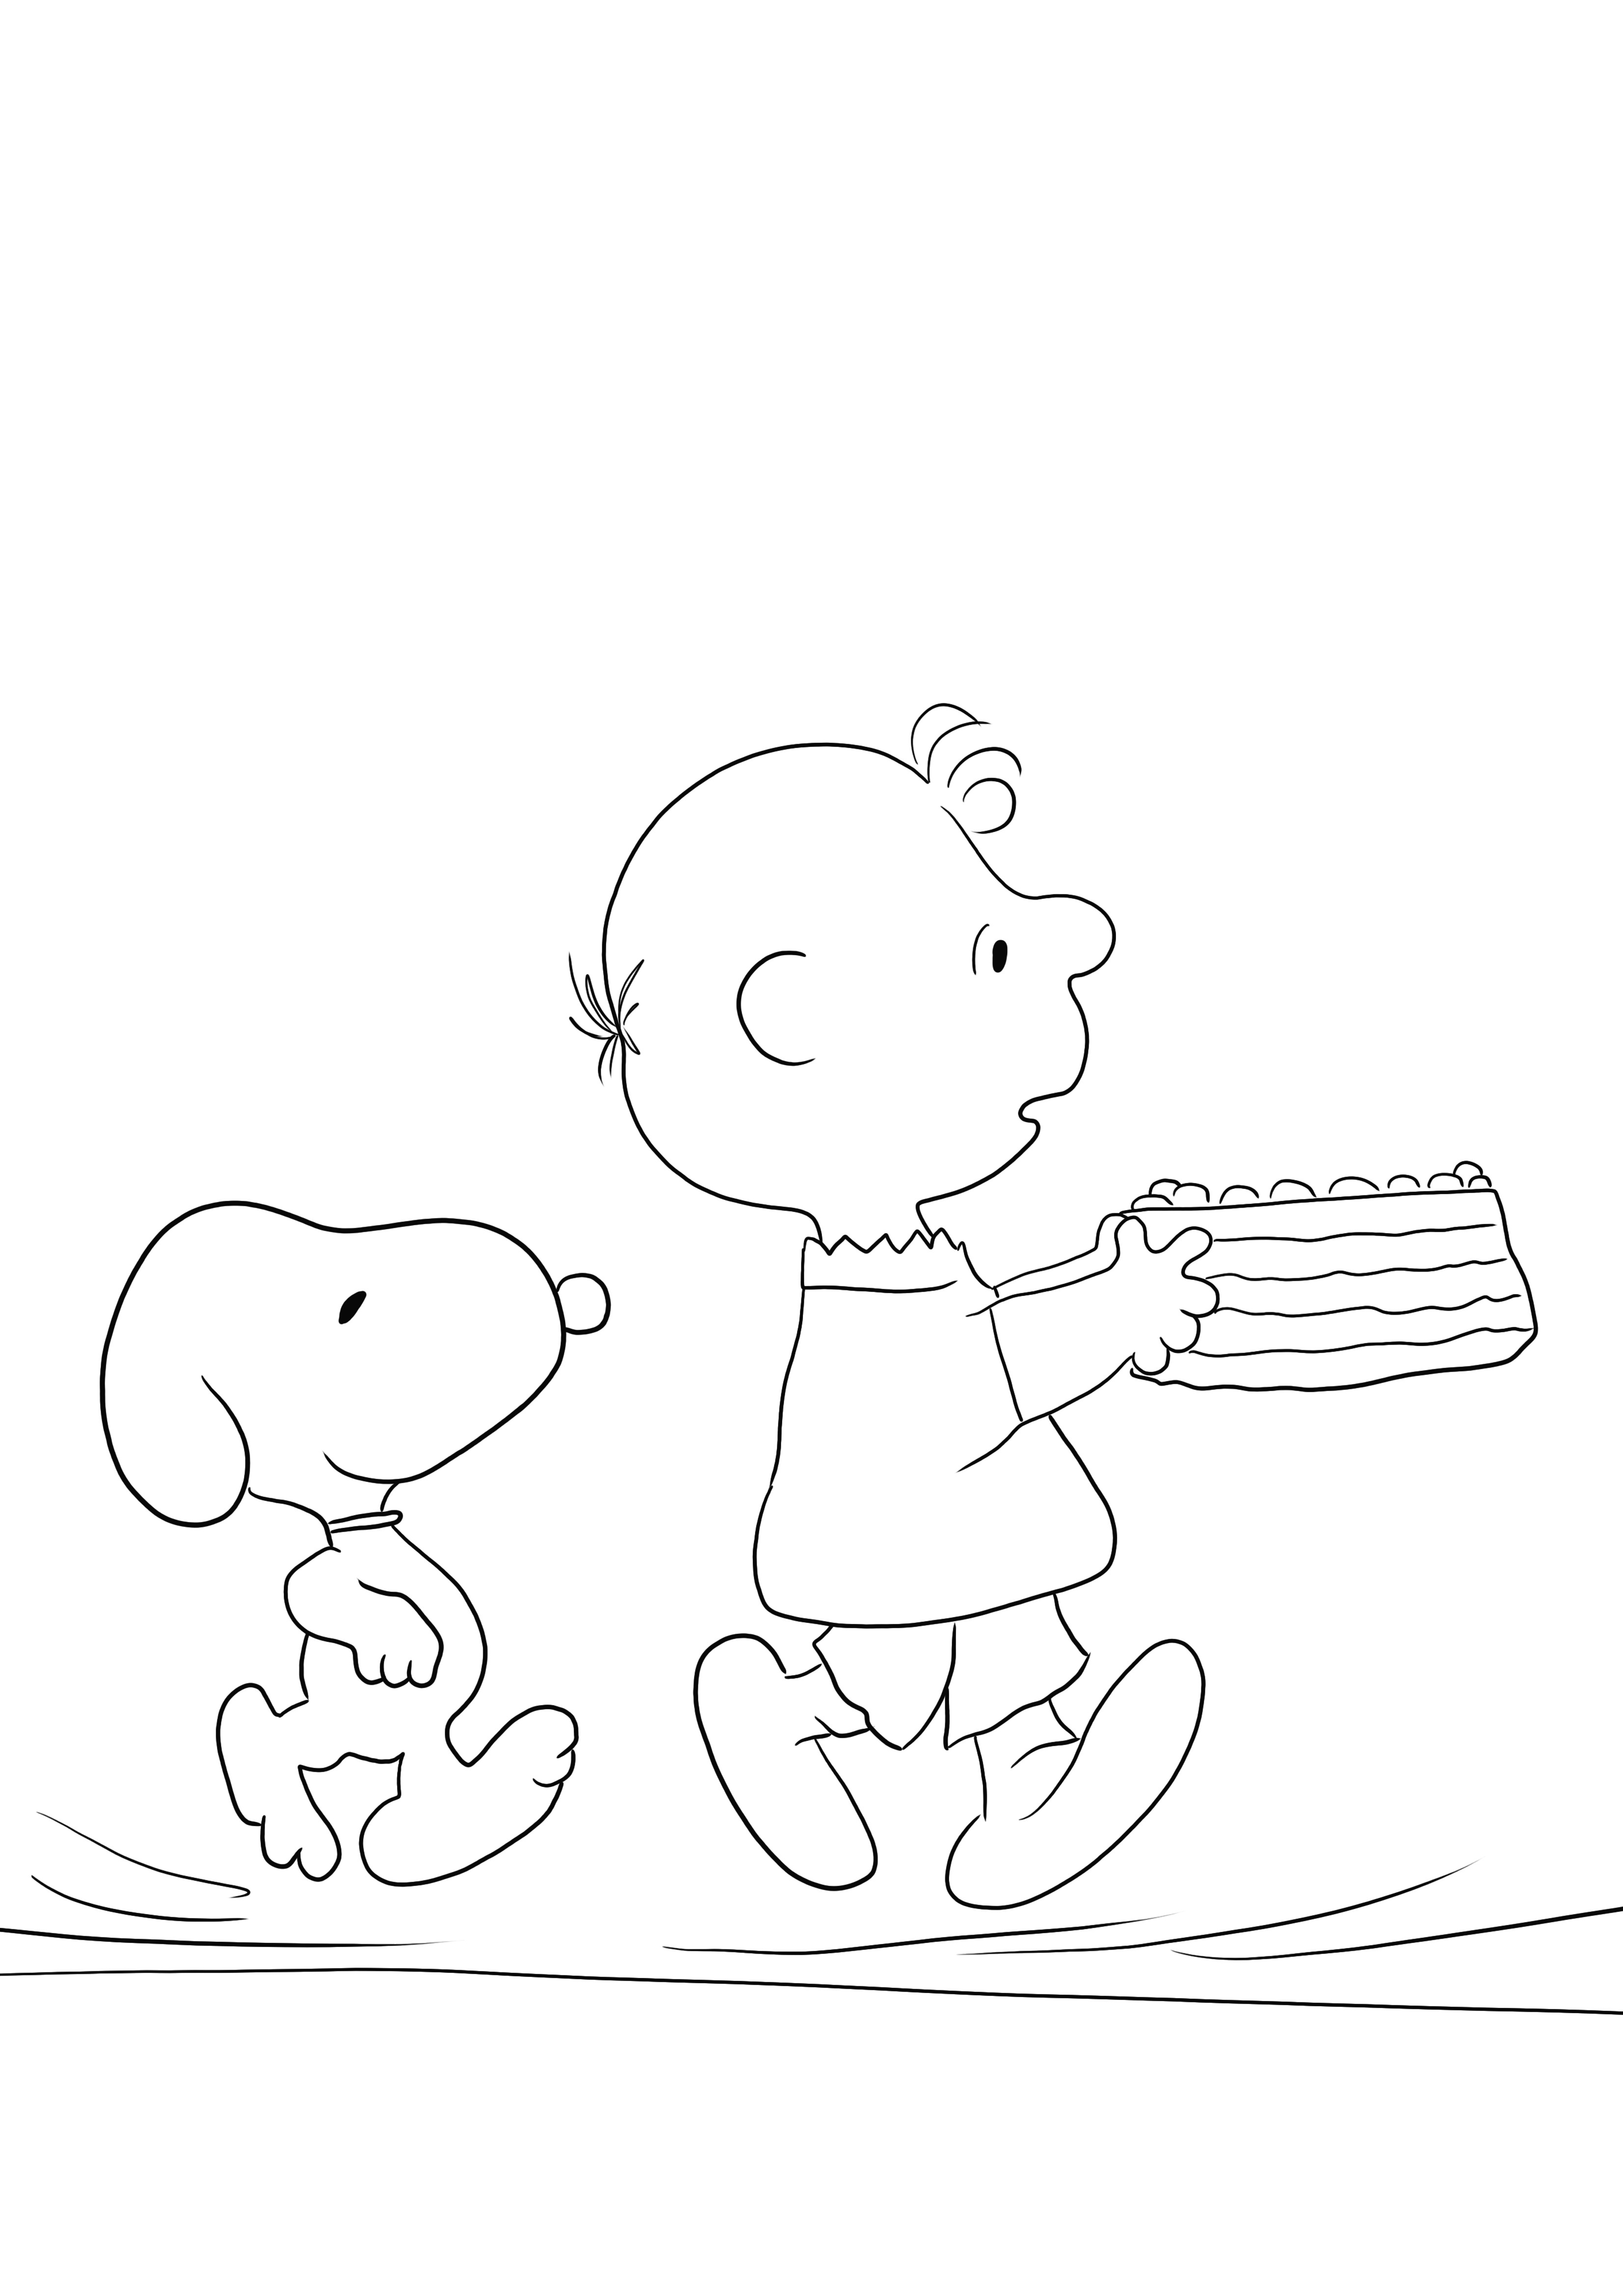 Simples e grátis para imprimir folha de colorir do Snoopy Birthday para aprender com diversão